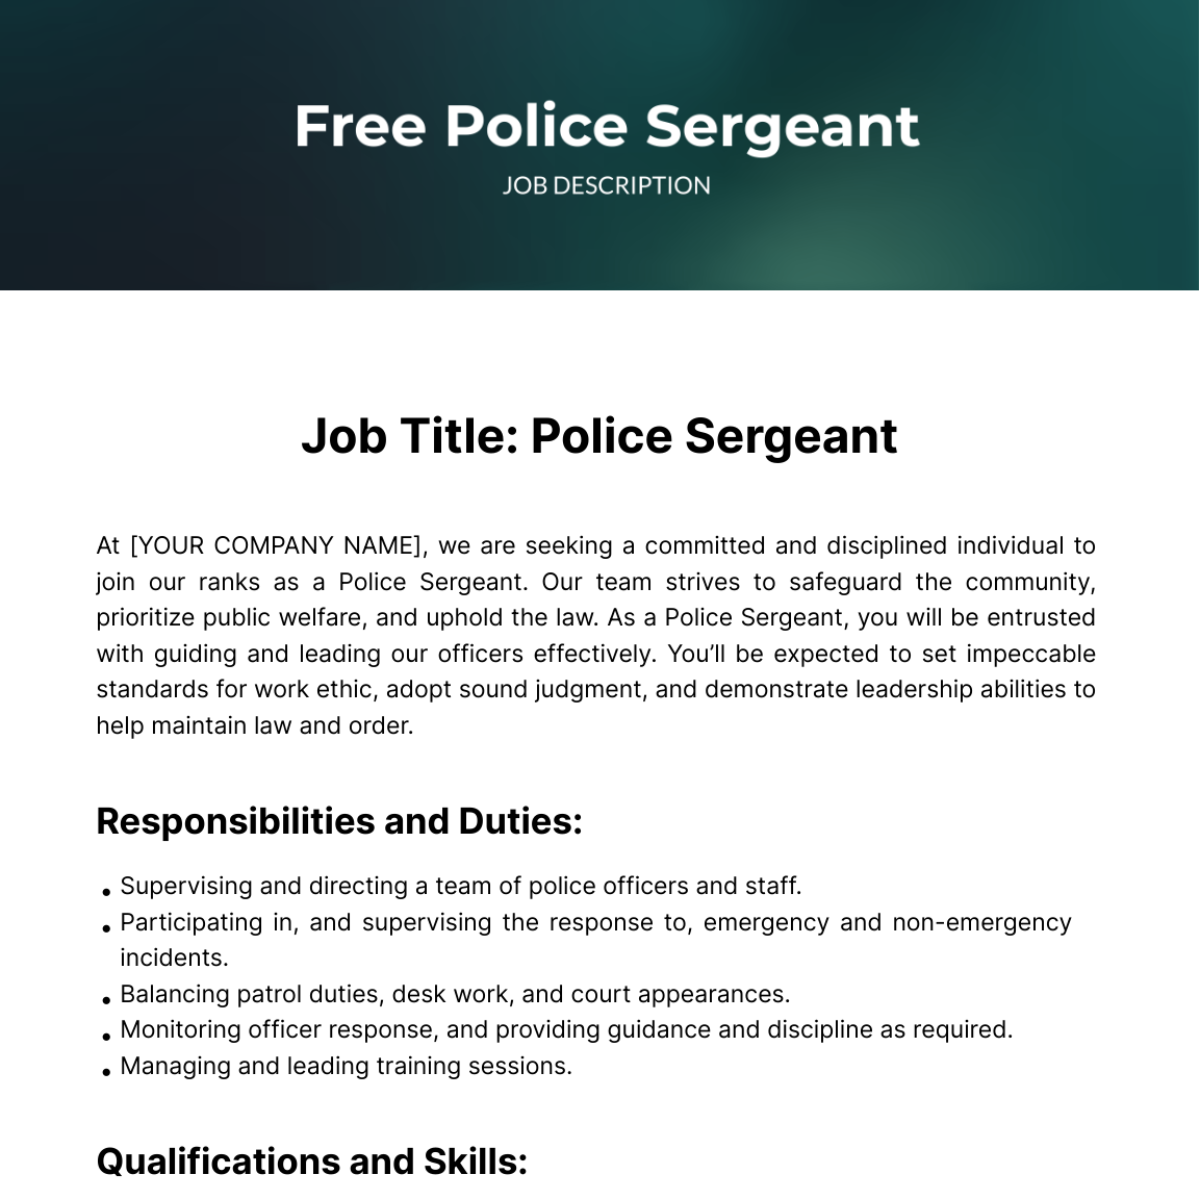 Police Sergeant Job Description Template